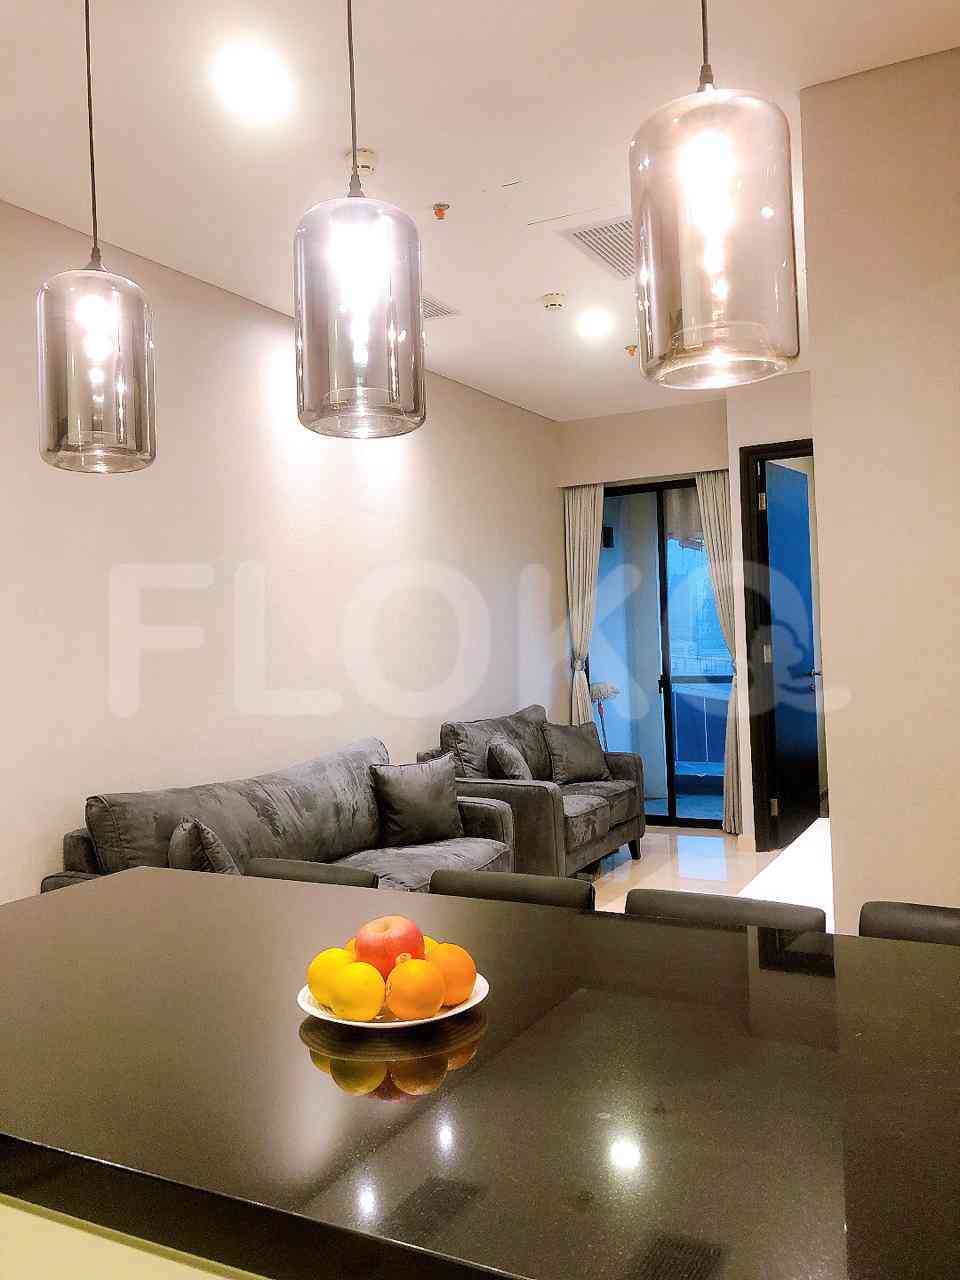 2 Bedroom on 13th Floor for Rent in Sudirman Suites Jakarta - fsuf9f 2